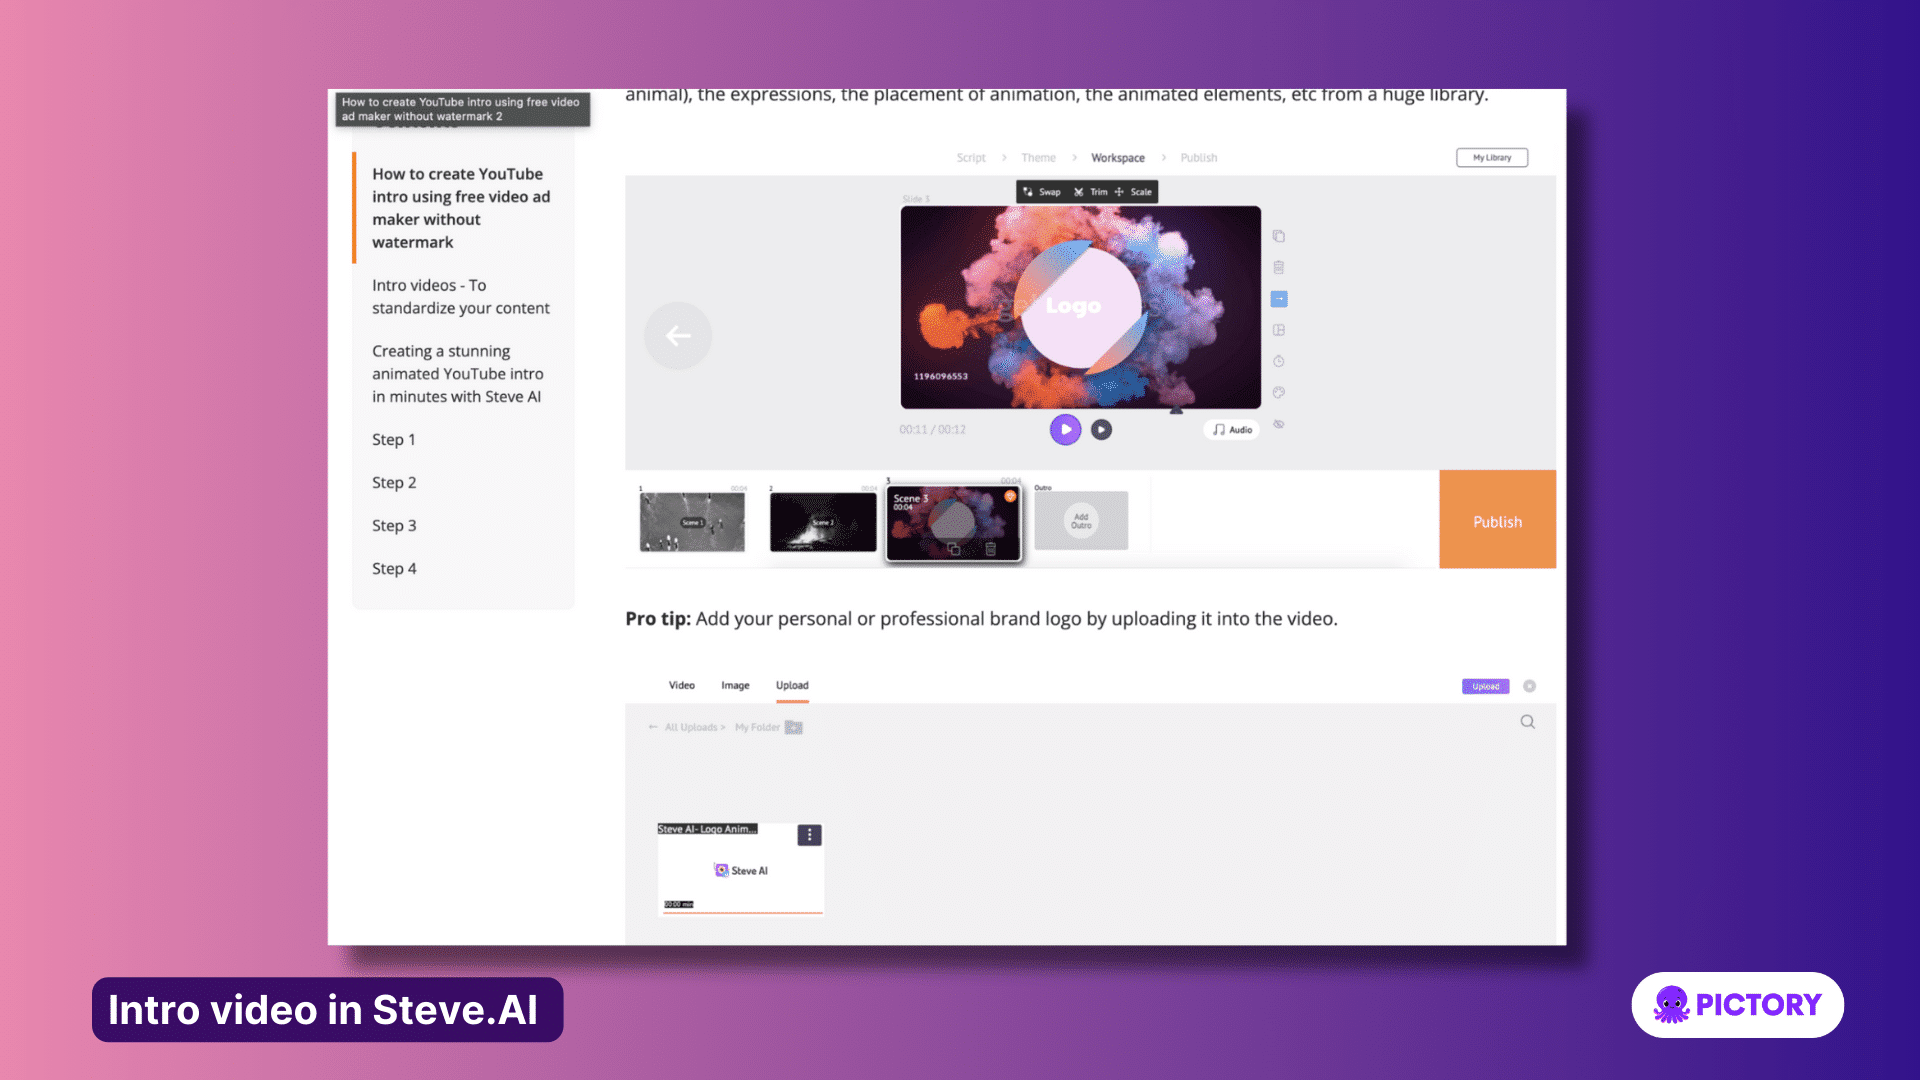 Intro videos in Steve.AI